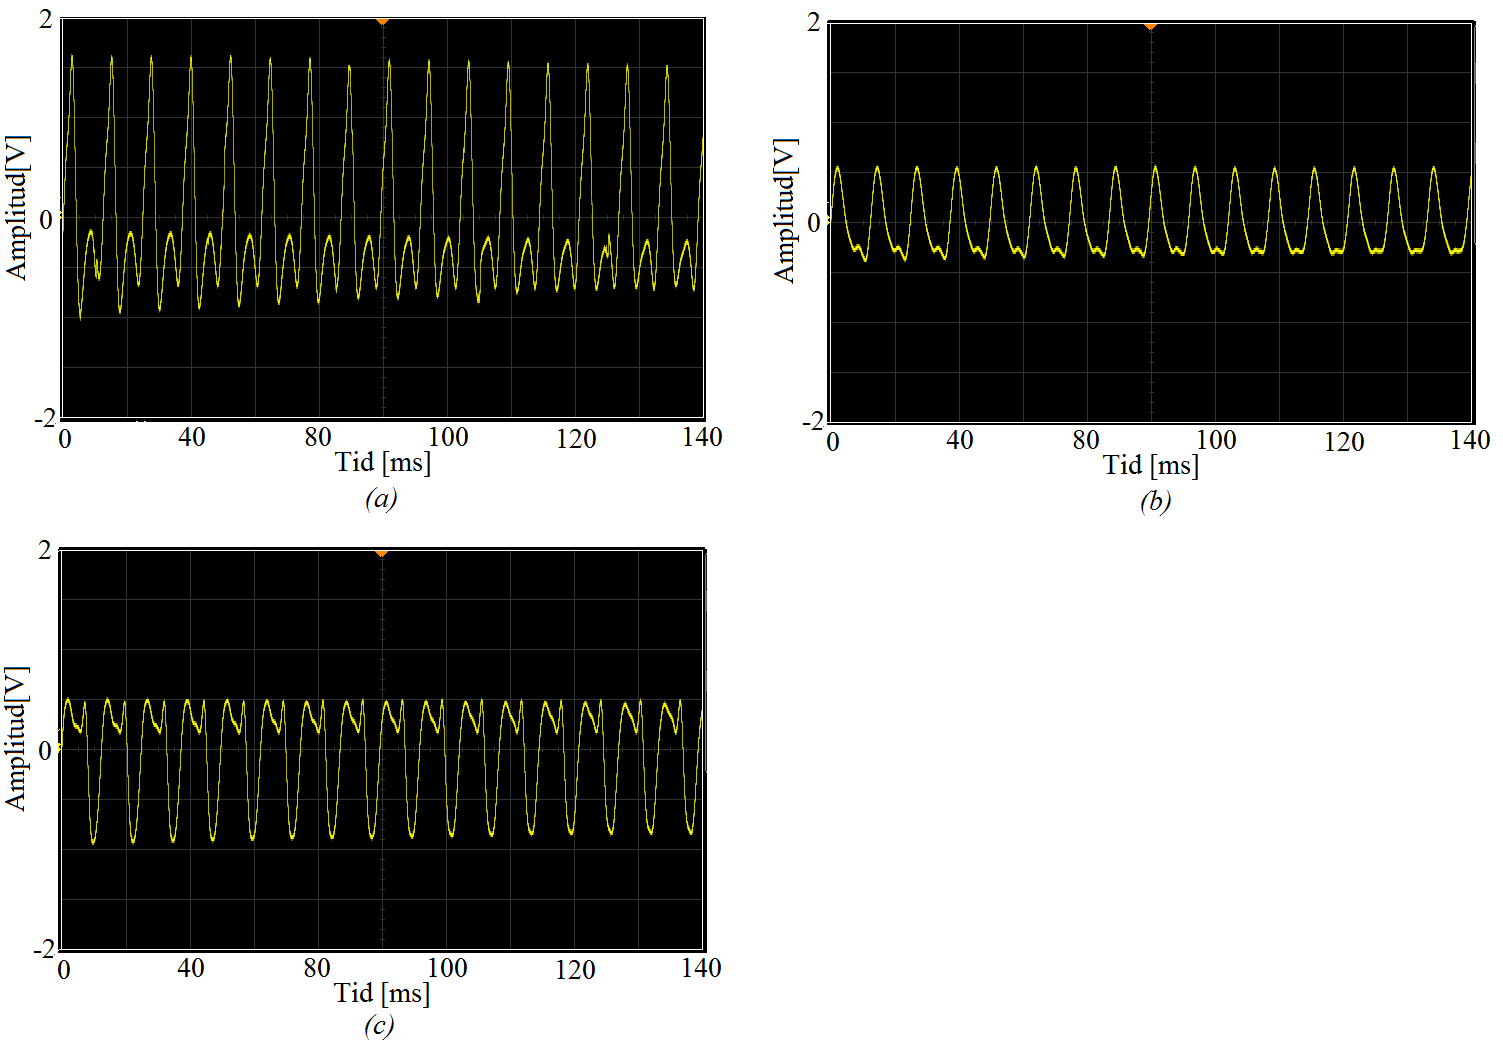 inte fibrerna placeras för nära reflektionsytan eftersom de då krockar med varandra. Kompletterande värden för amplituderna i figur 7 går att hitta i tabell 1. 4.